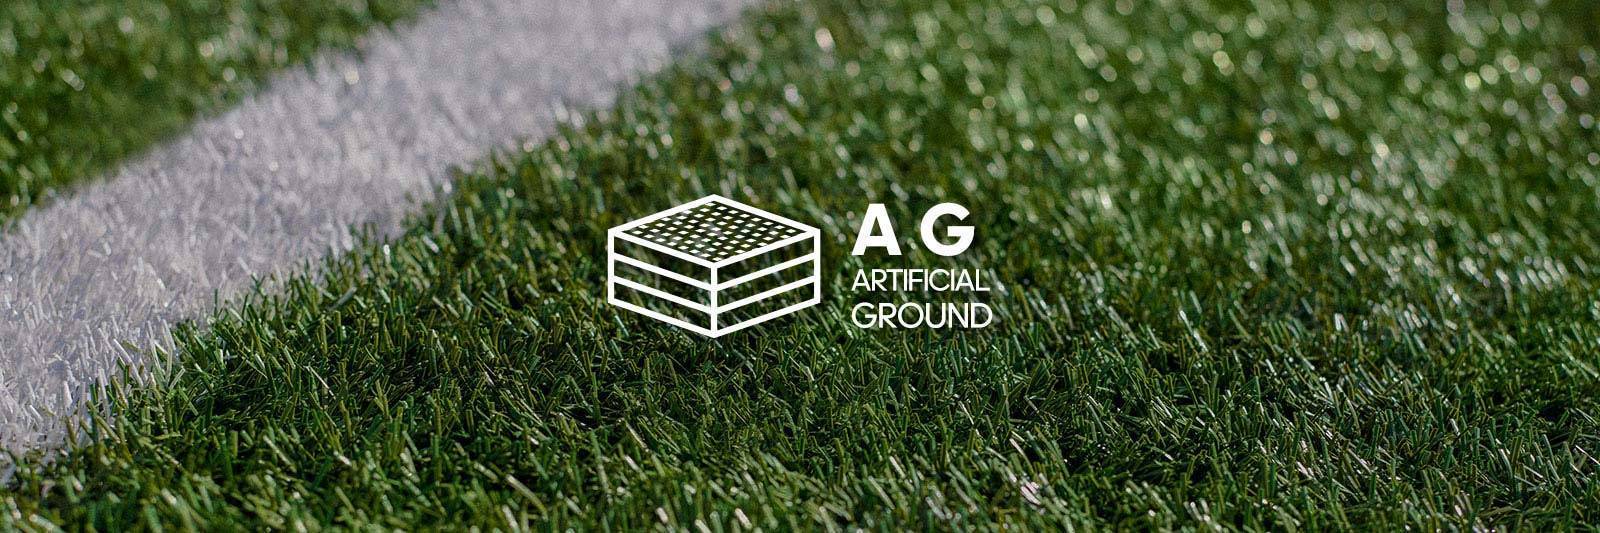 Описание искусственного газона для футбольного поля: как выглядит, свойства